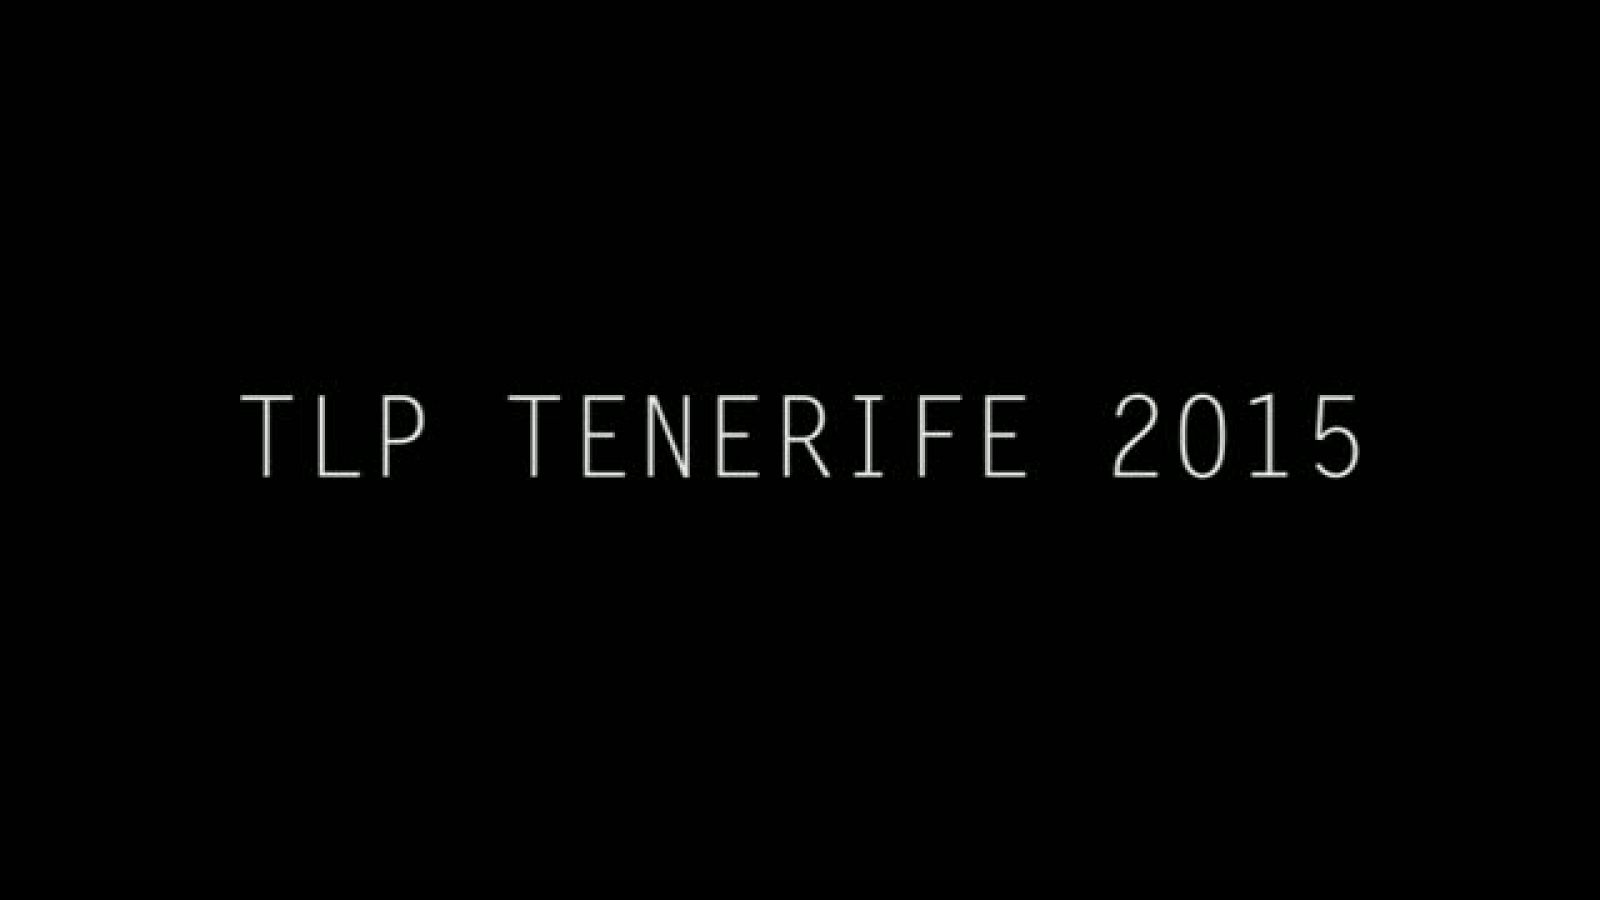 TLP Tenerife: ¡Hasta el próximo año teleperos!